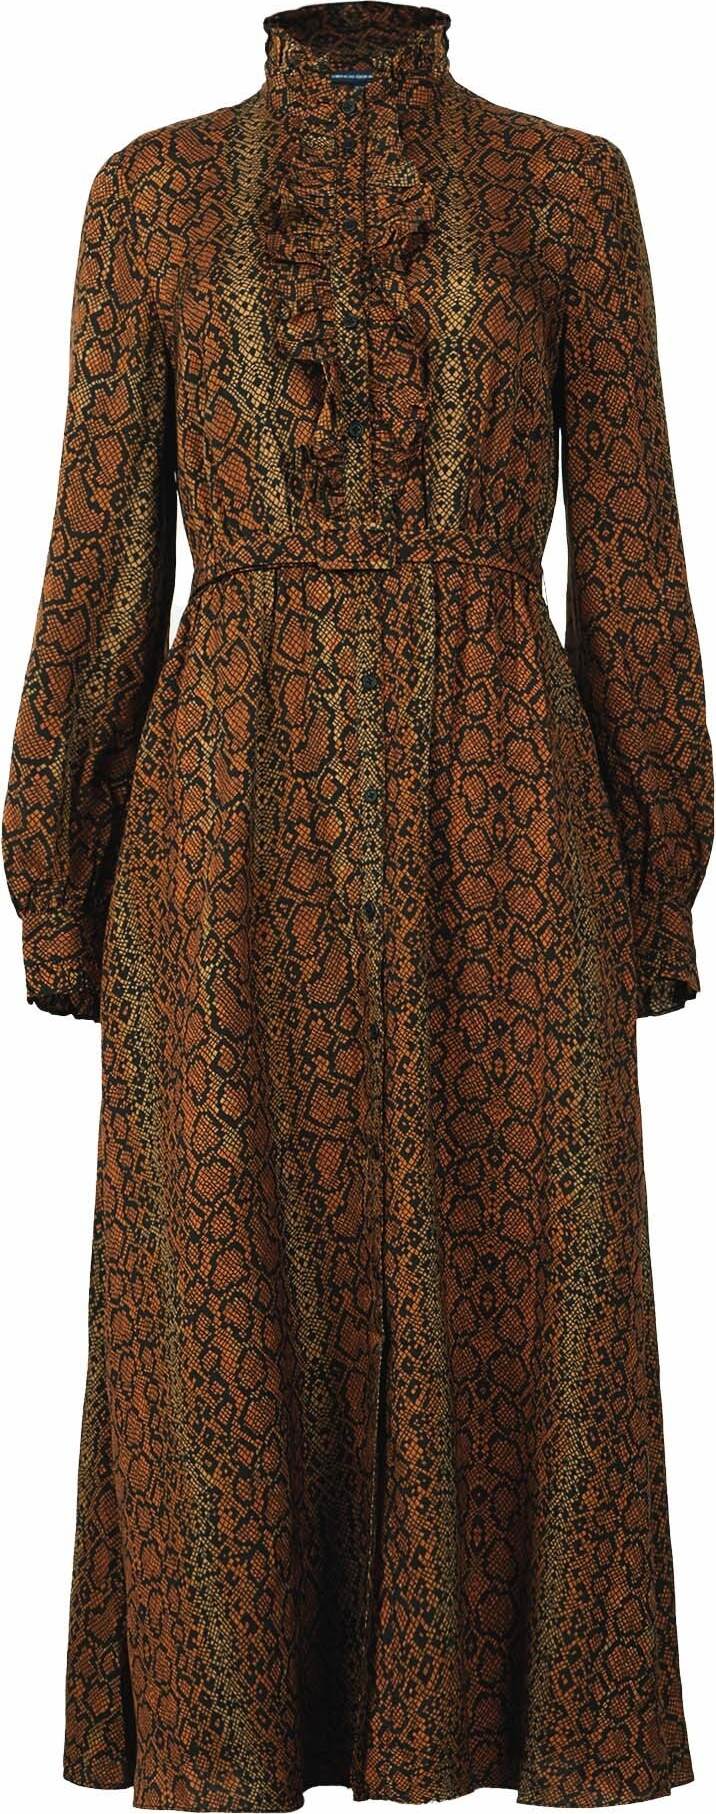 FRENCH CONNECTION Košilové šaty 'Erina' hnědá / rezavě hnědá / tmavě hnědá / černá